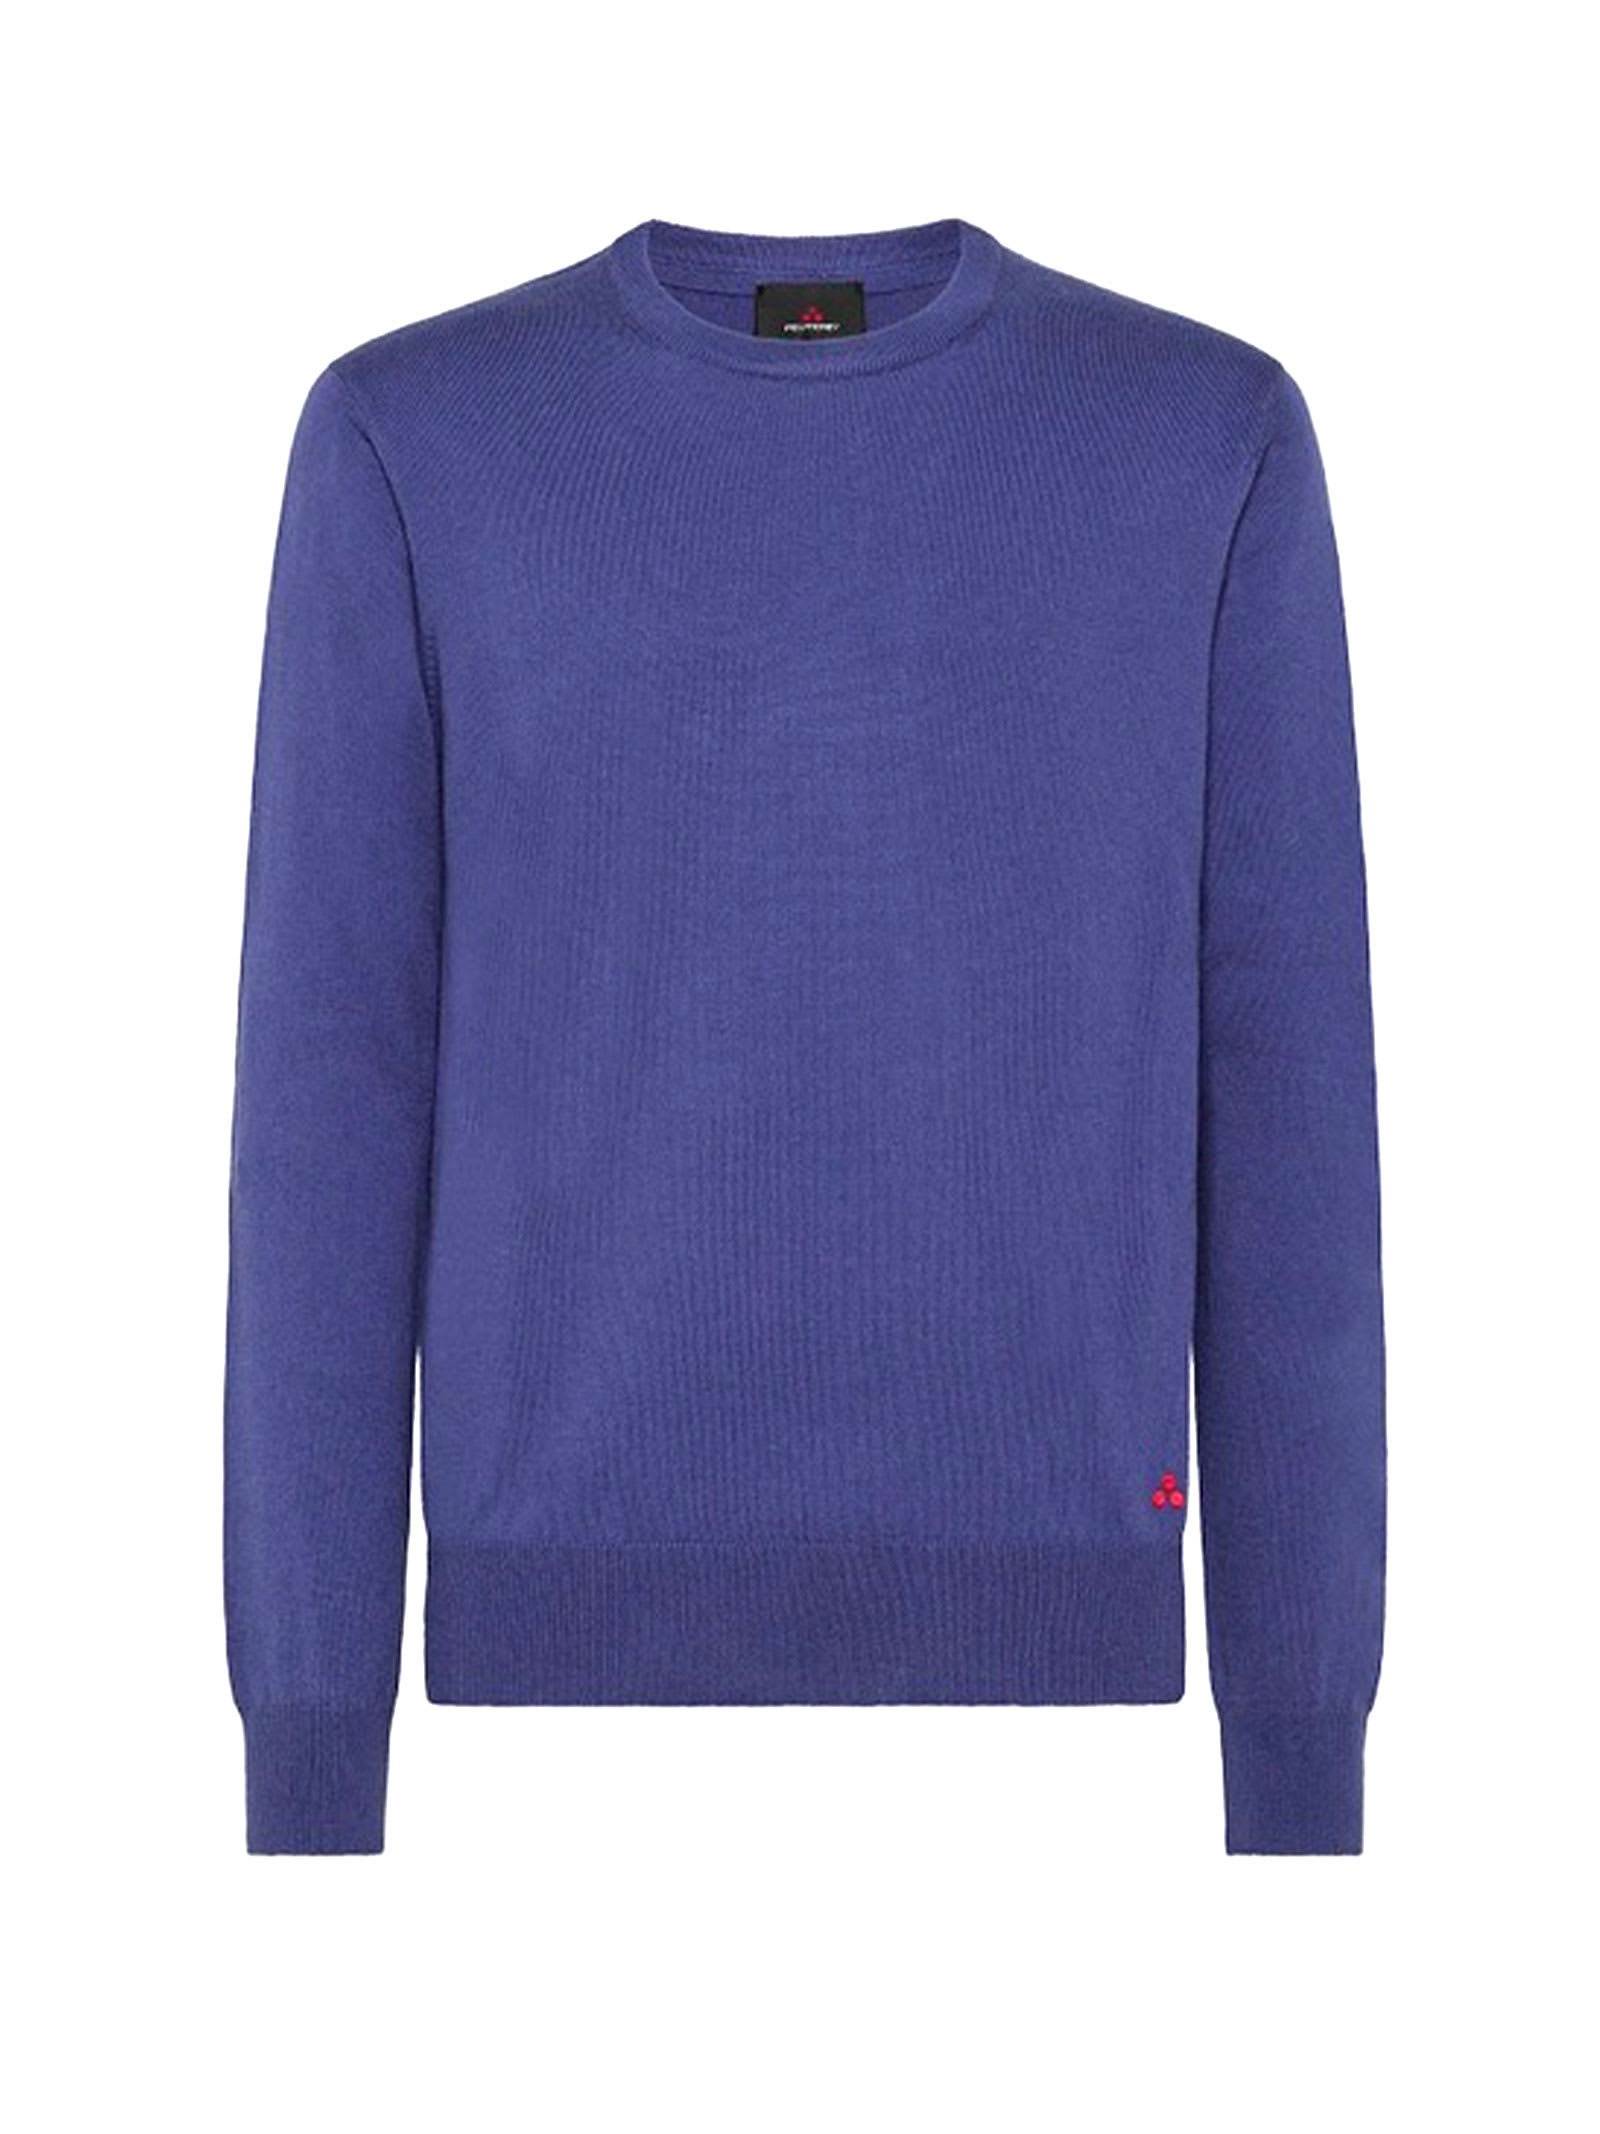 Exmoor Crewneck Sweater